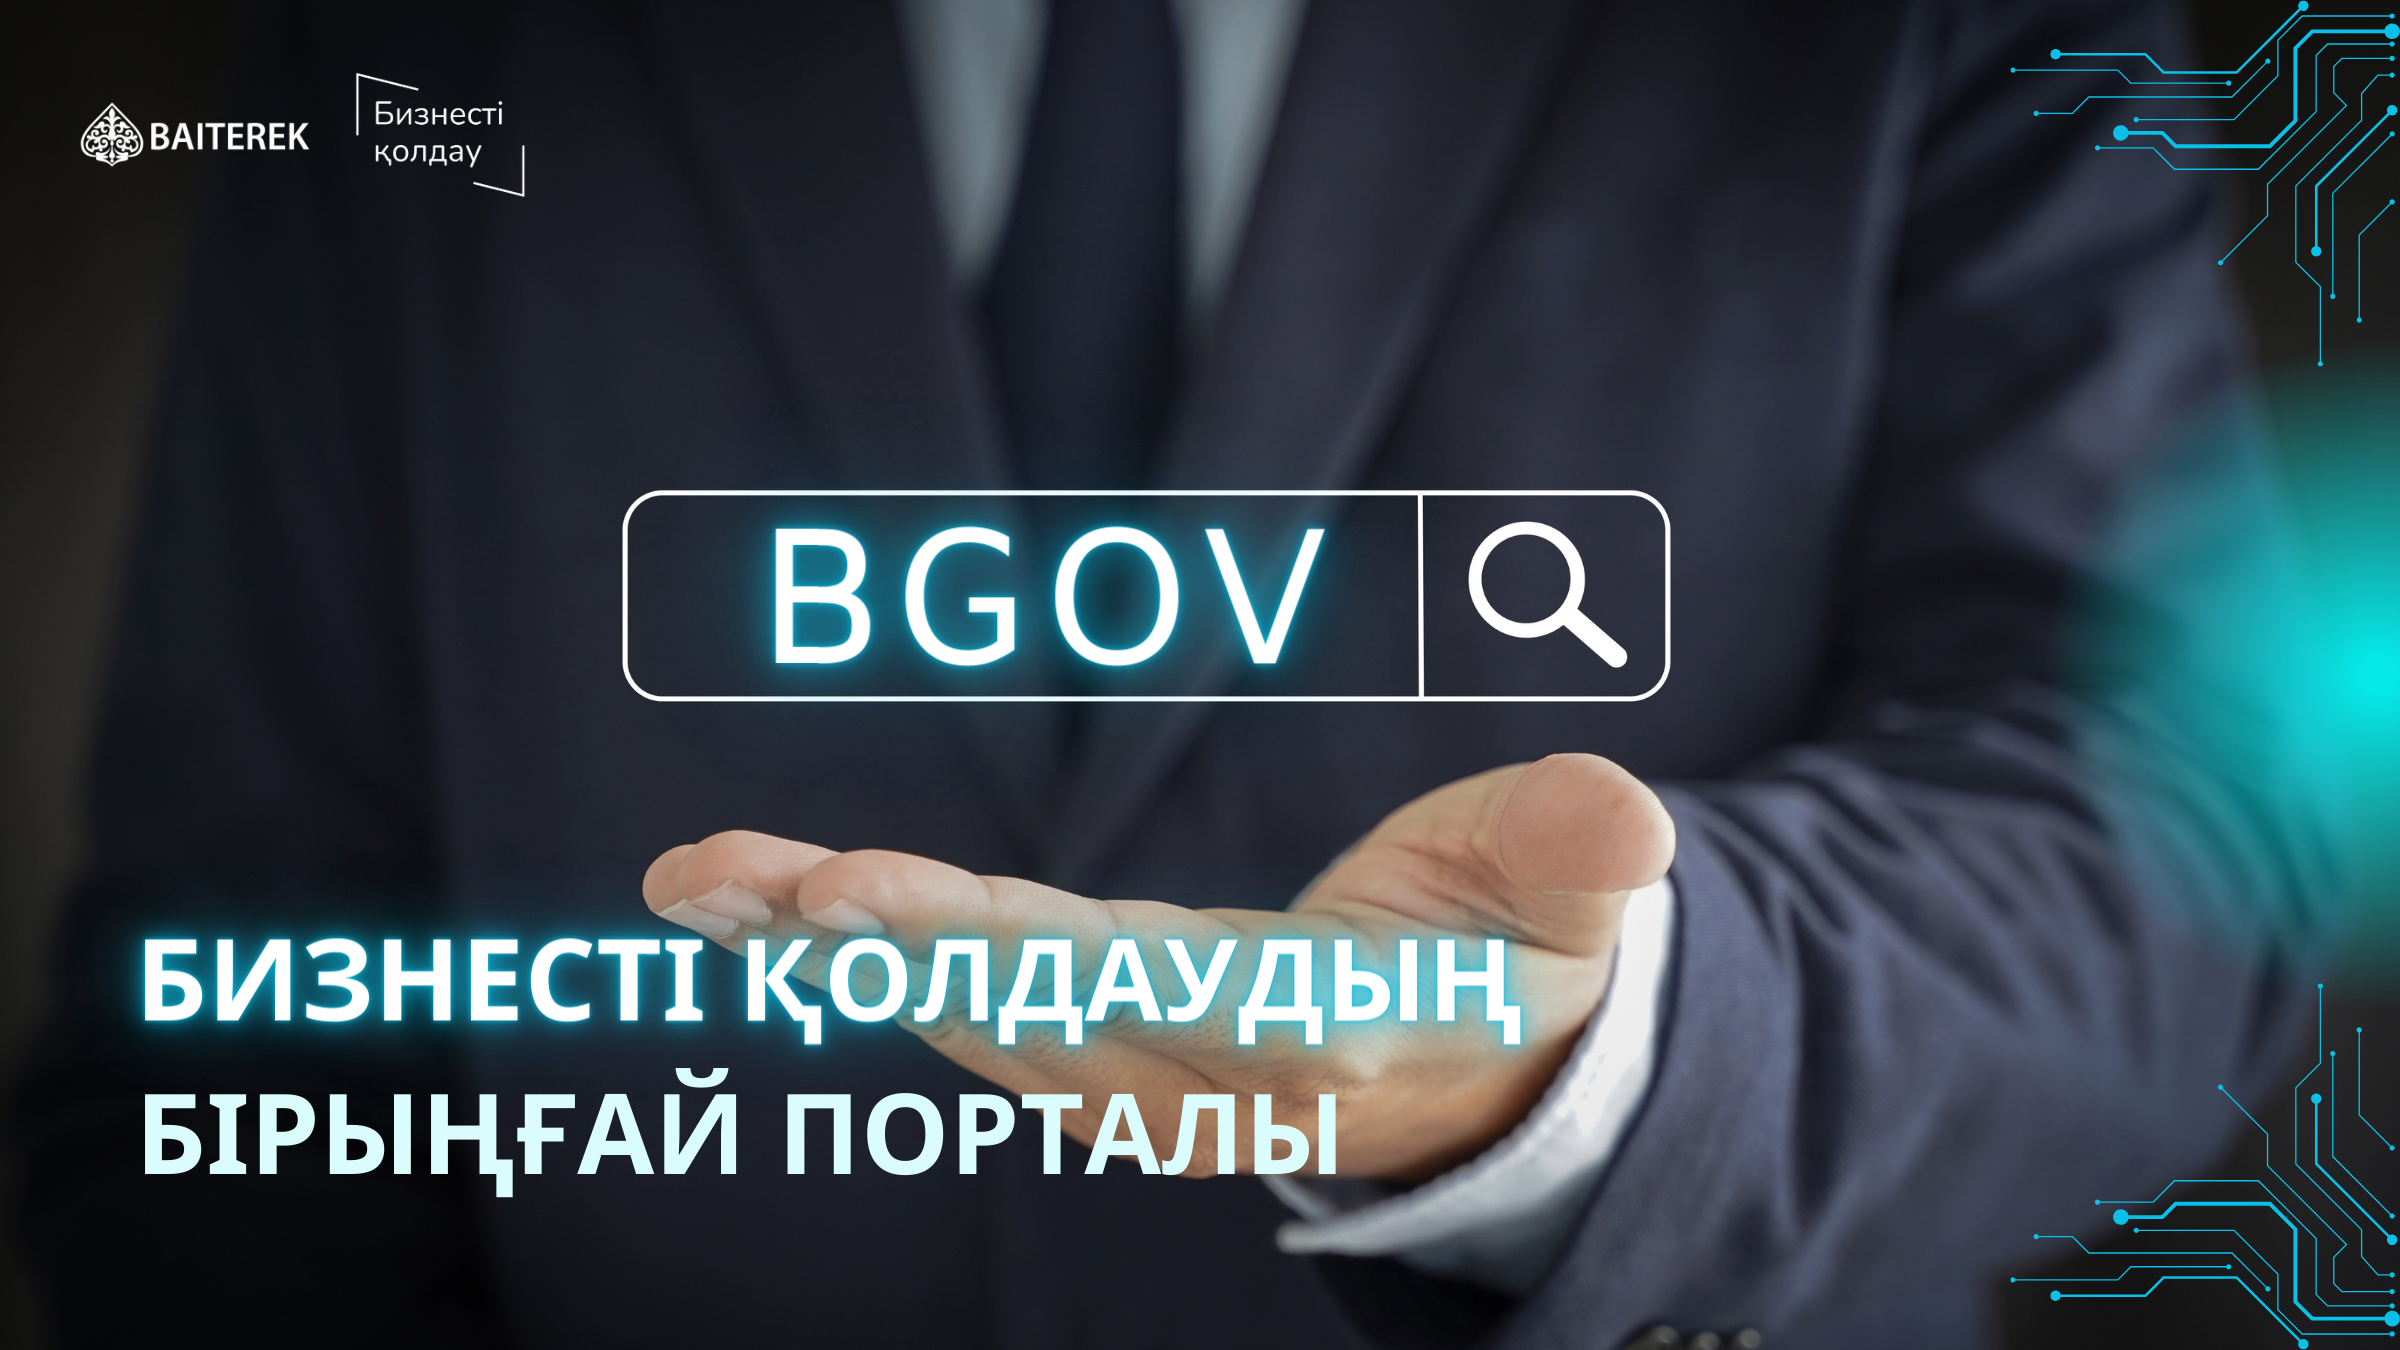 Bgov.kz - Единое окно для финансовой поддержки бизнеса